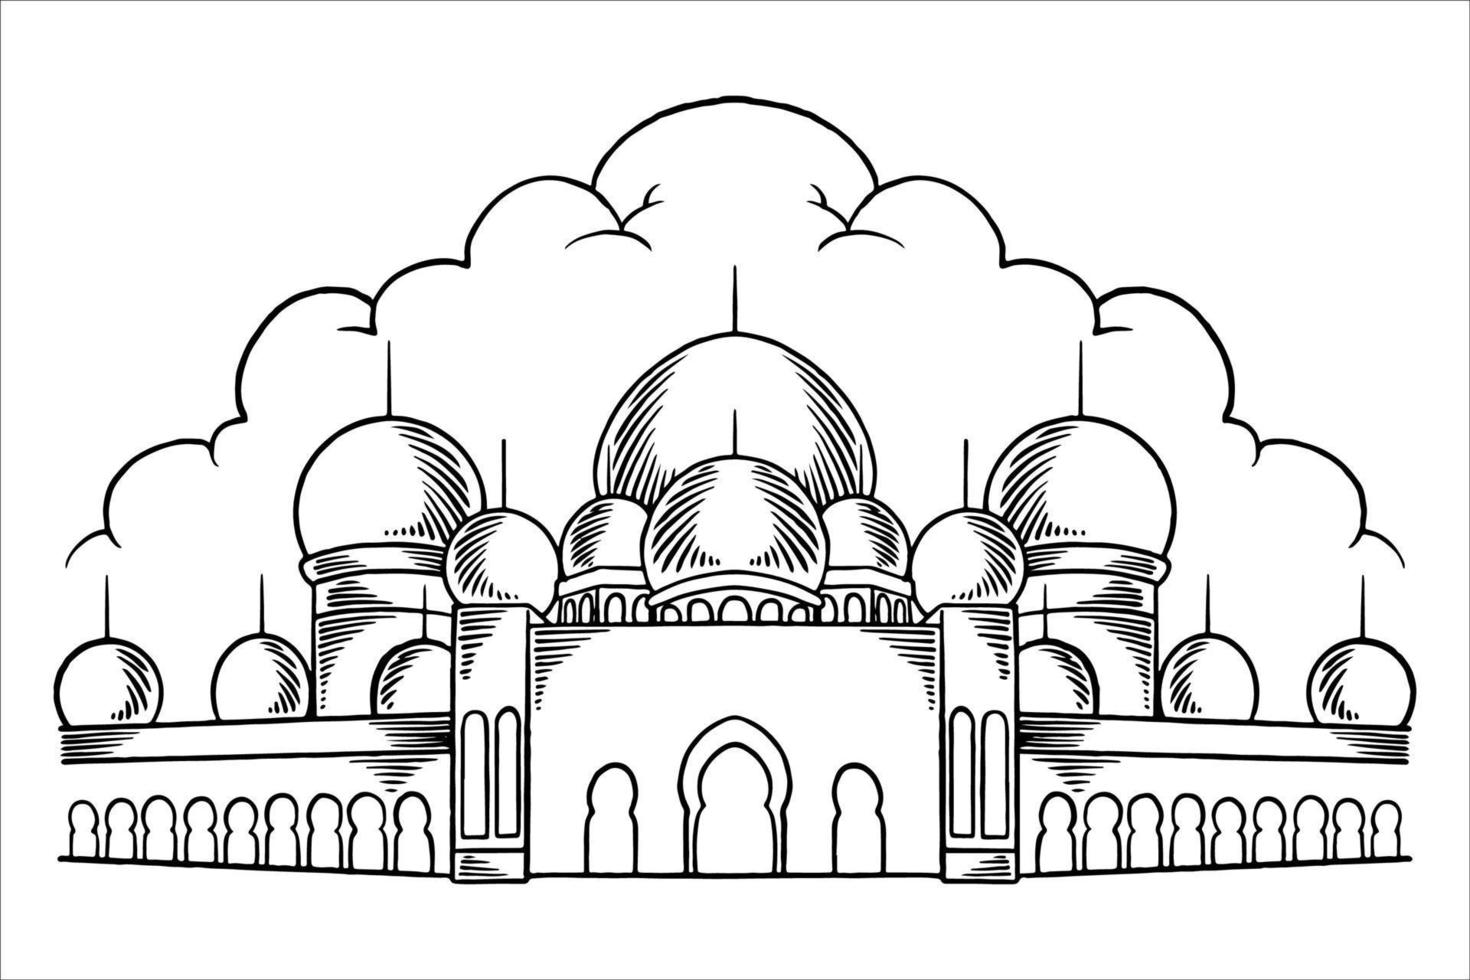 disegnato a mano o schizzo della grande moschea per elementi islamici del ramadan. vettore